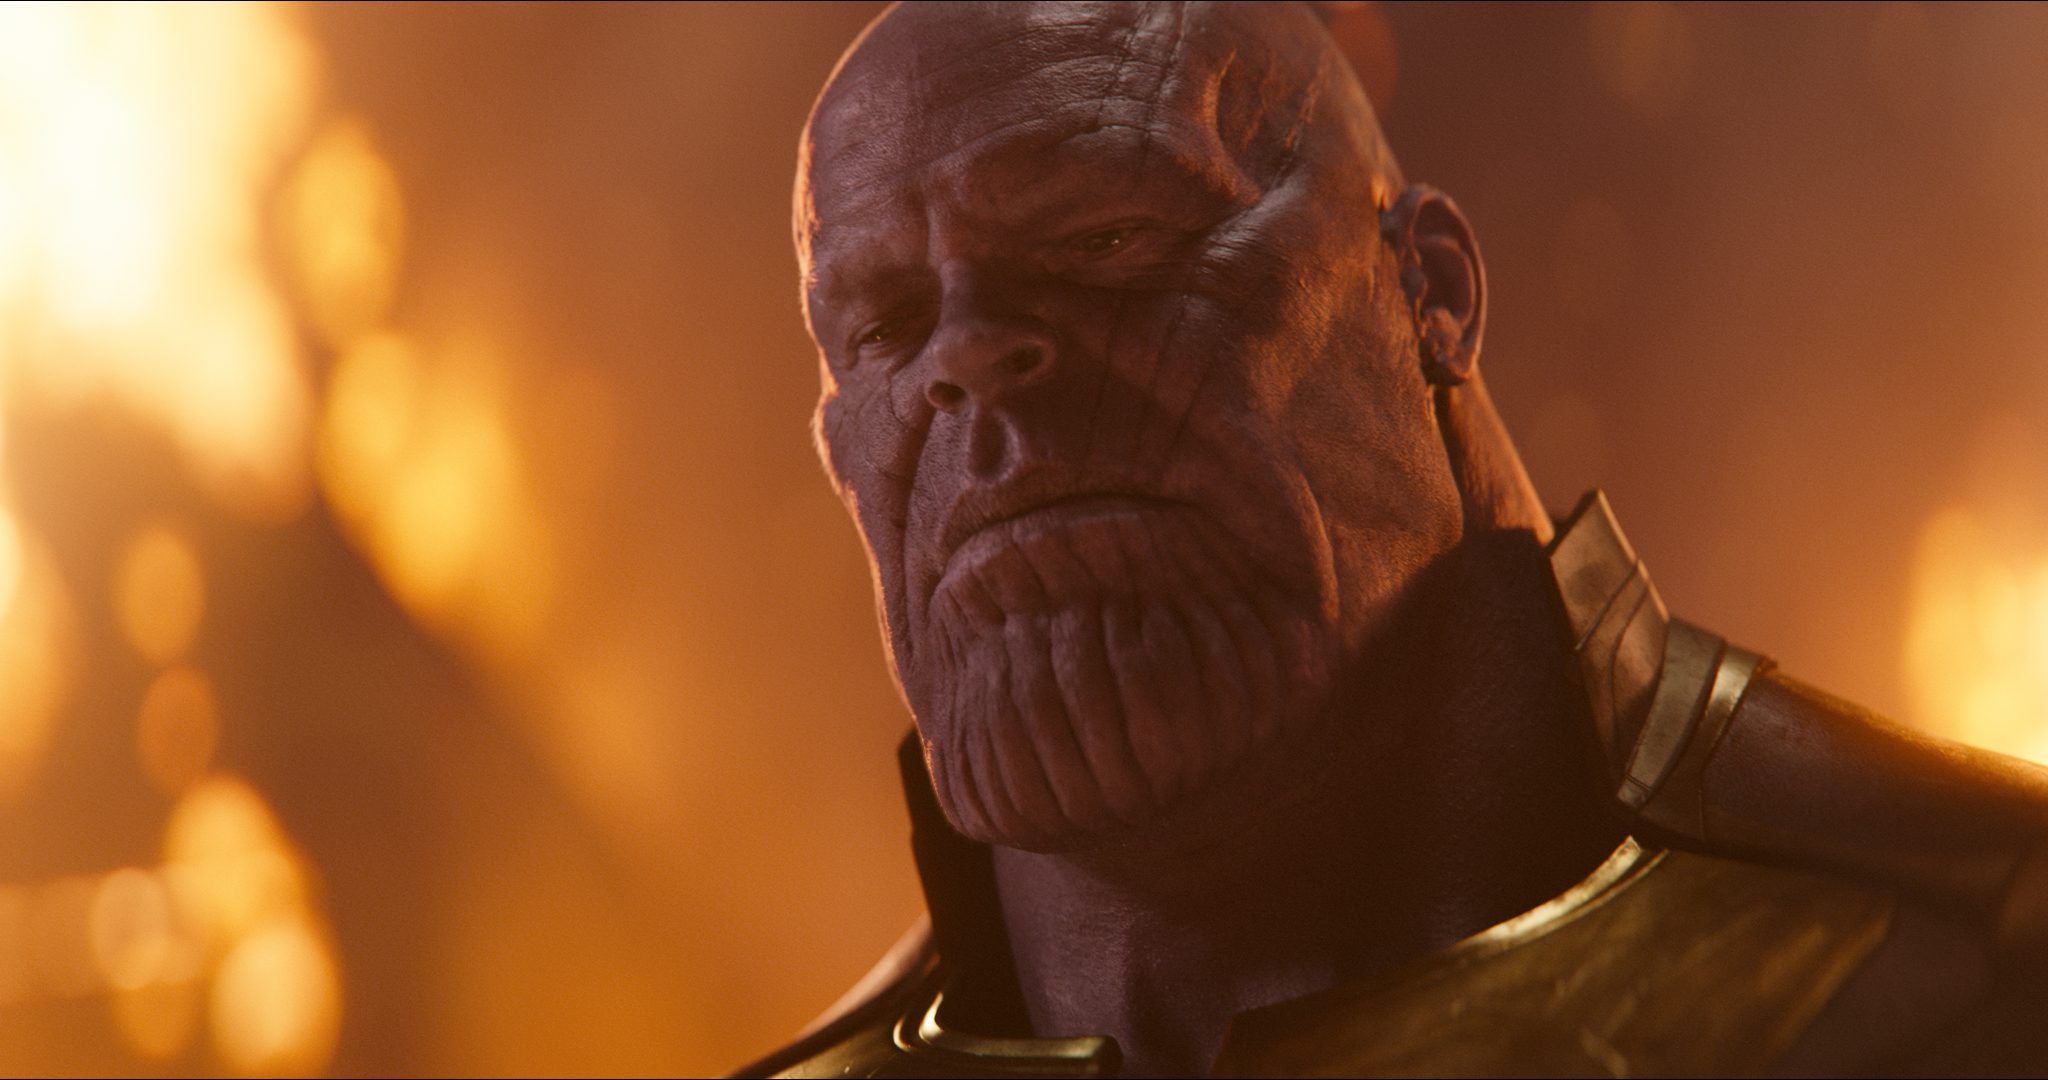 Hat Avengers: Endgame Thanos ruiniert?